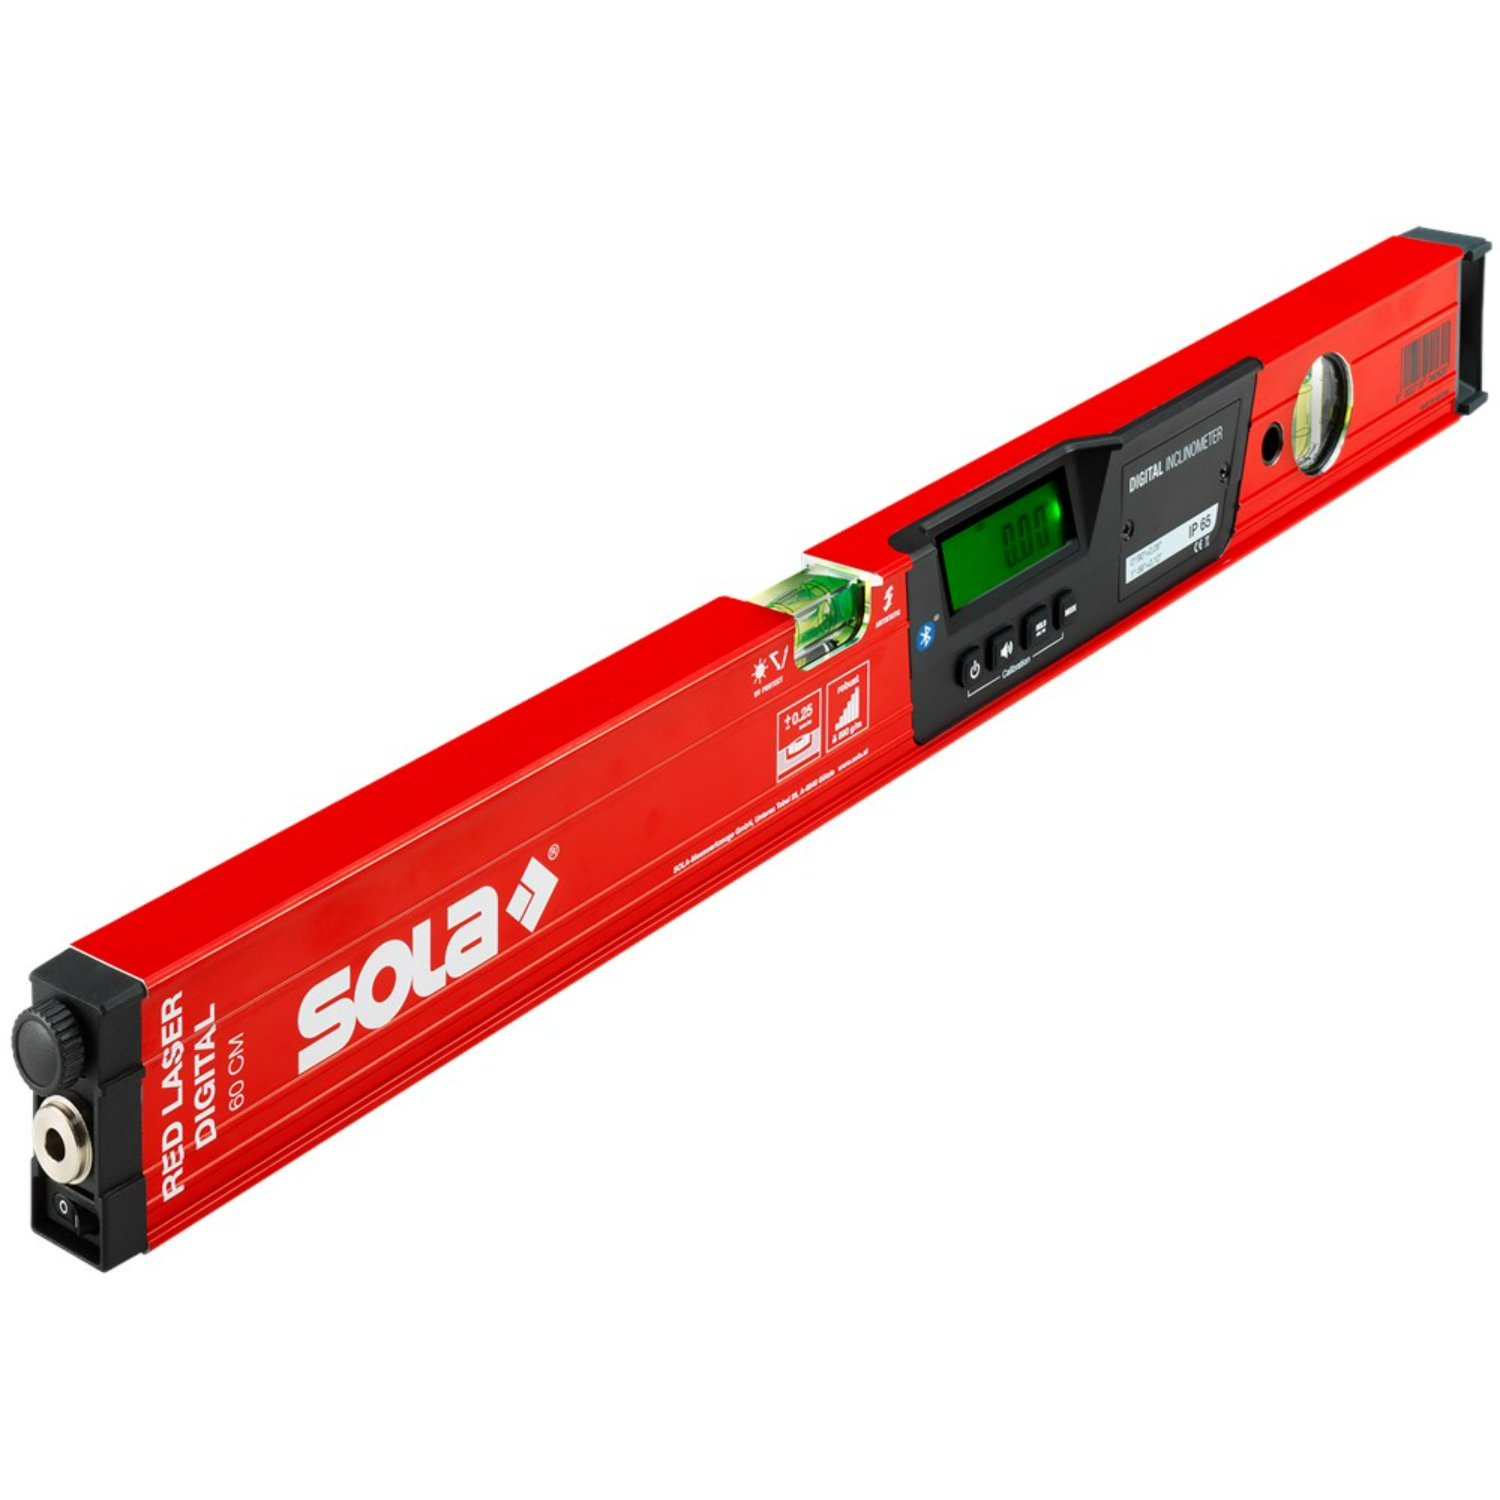 Sola RED 60 laser digital digitale waterpas Bluetooth - 600 mm-image